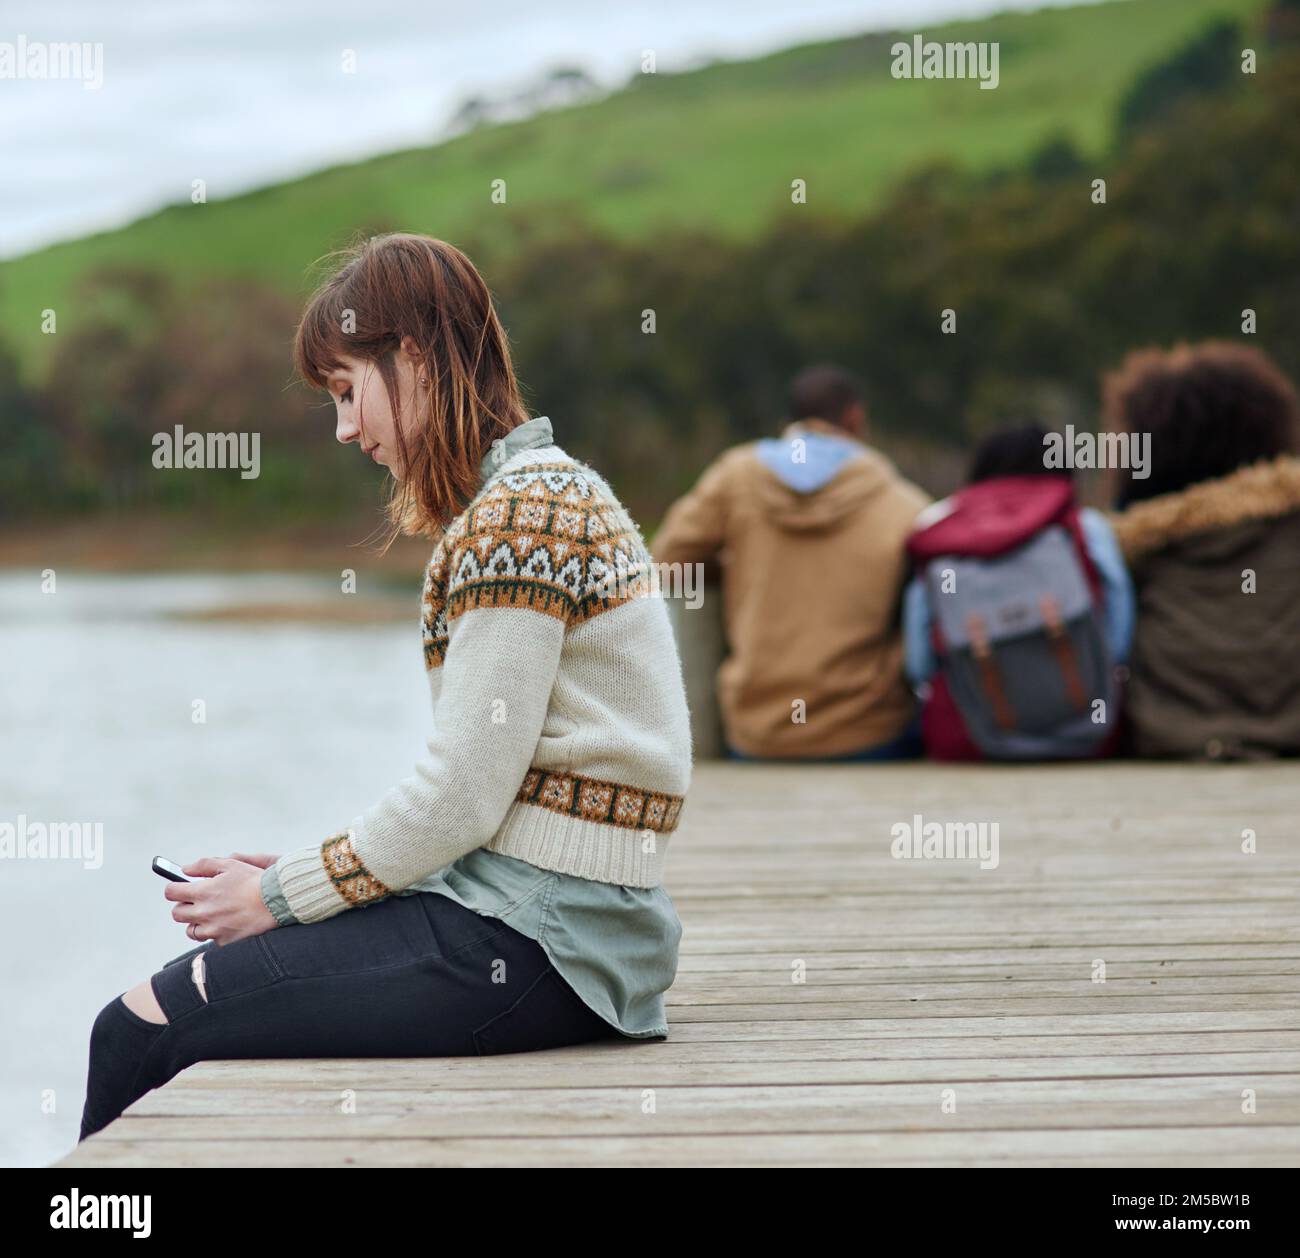 Godendosi un momento a se stessa. una giovane donna che invia un sms mentre si siede sul molo vicino a un lago. Foto Stock